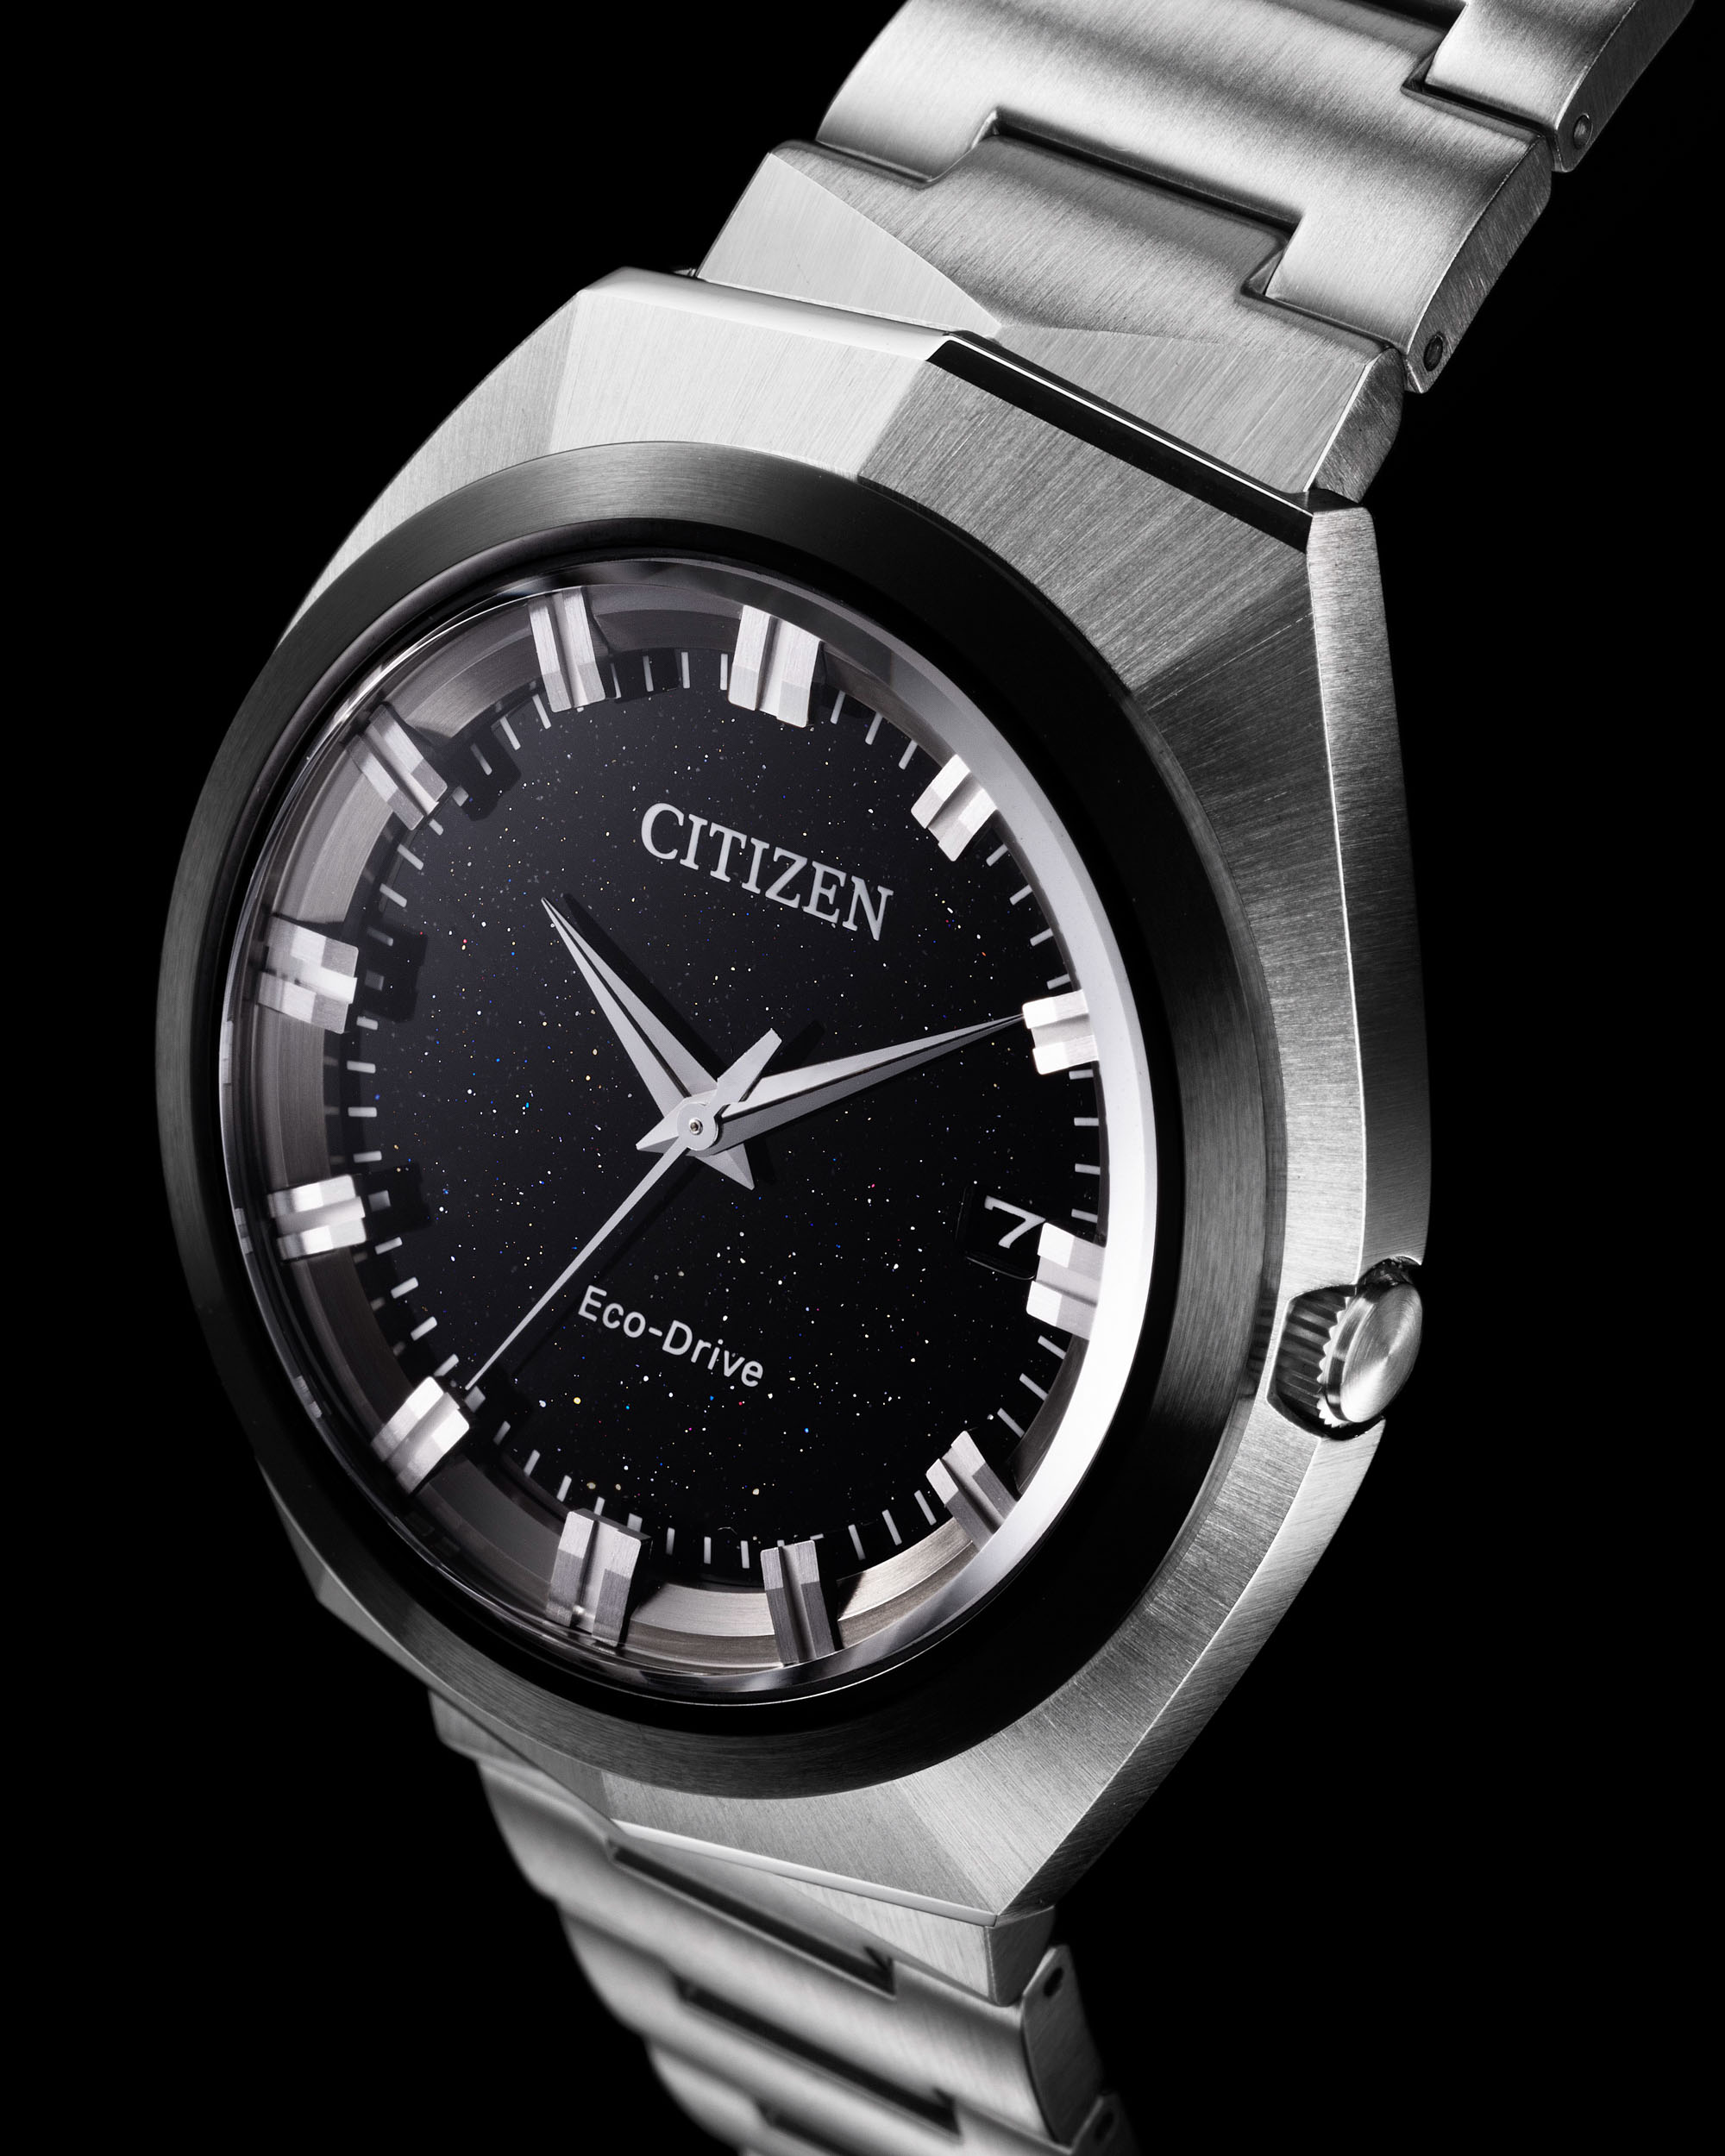 Citizen выпускает самые совершенные часы Eco-Drive на сегодняшний день